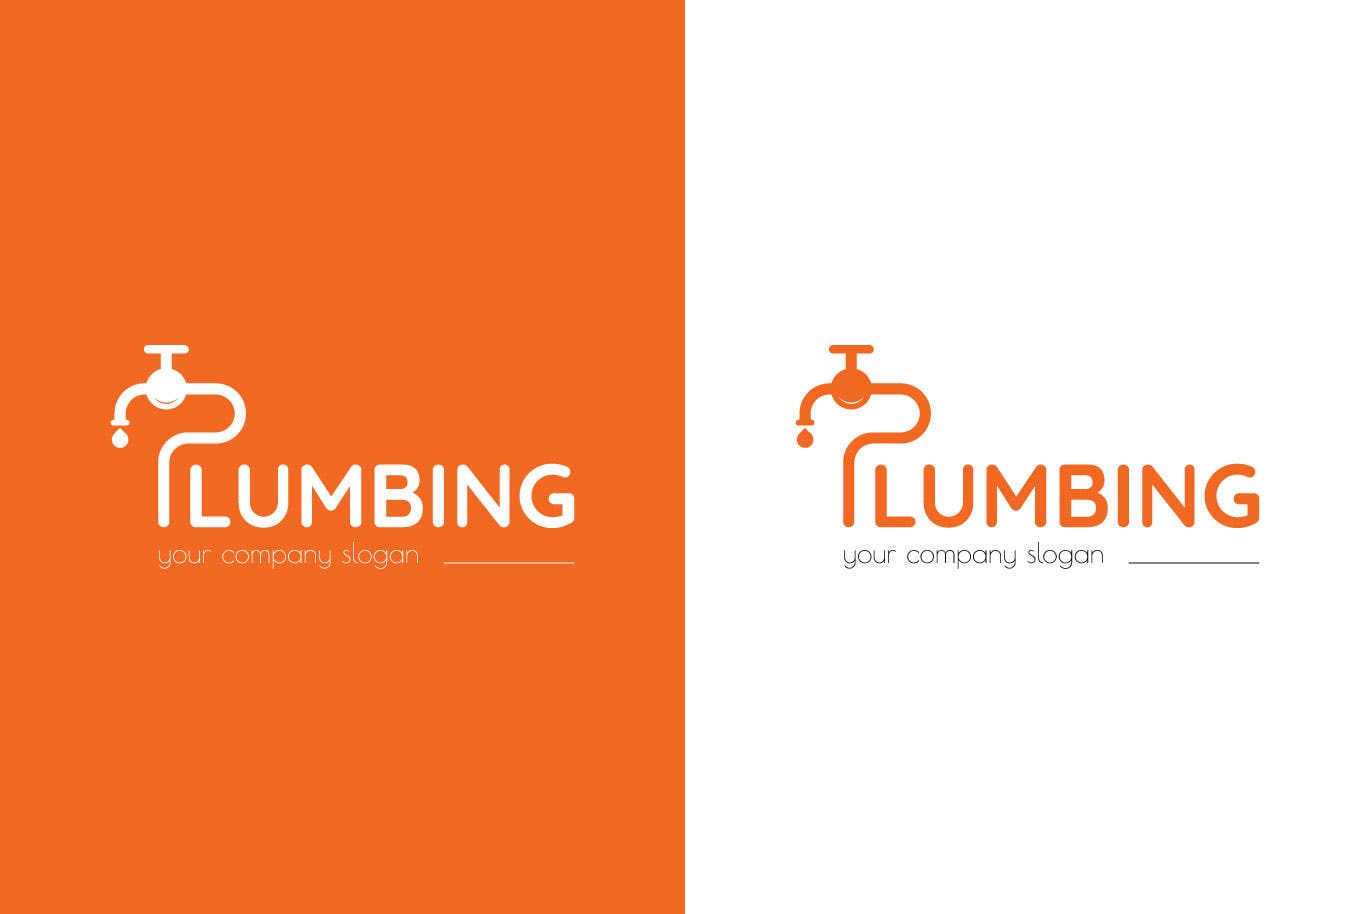 字母P图形供水设施品牌Logo设计蚂蚁素材精选模板 Plumbing Business Logo Template插图(1)